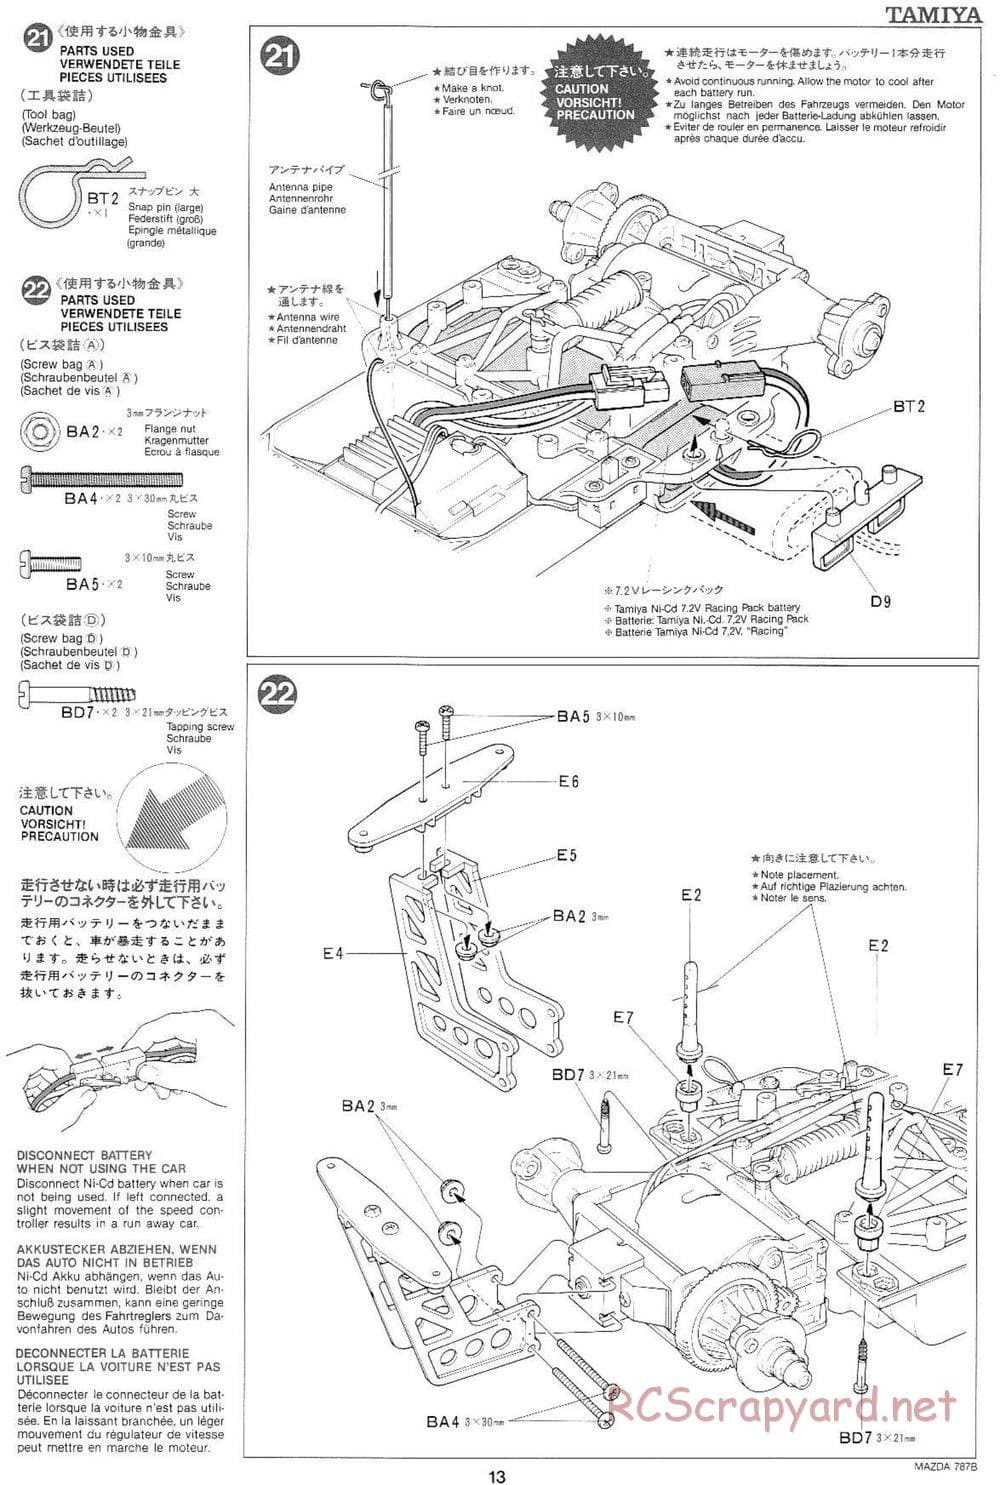 Tamiya - Mazda 787B - Group-C Chassis - Manual - Page 13